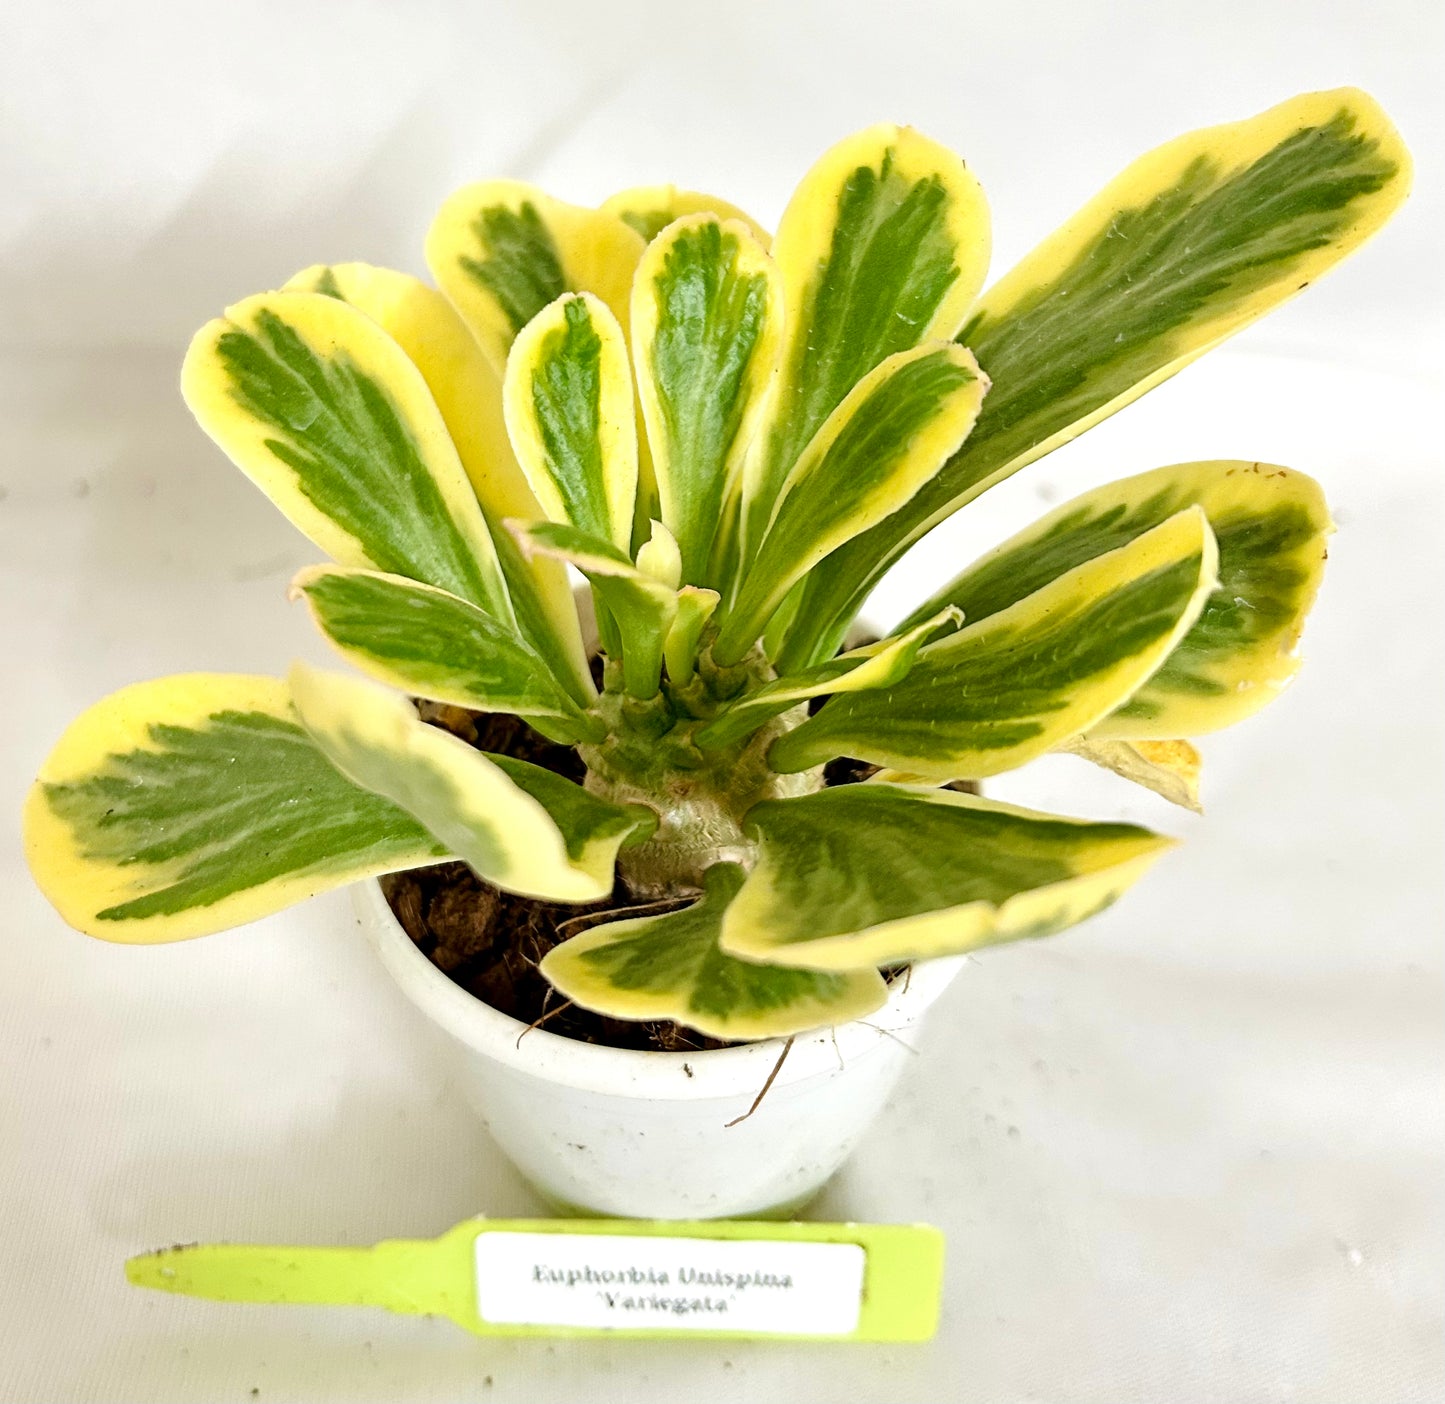 Euphorbia Unispina Variegata